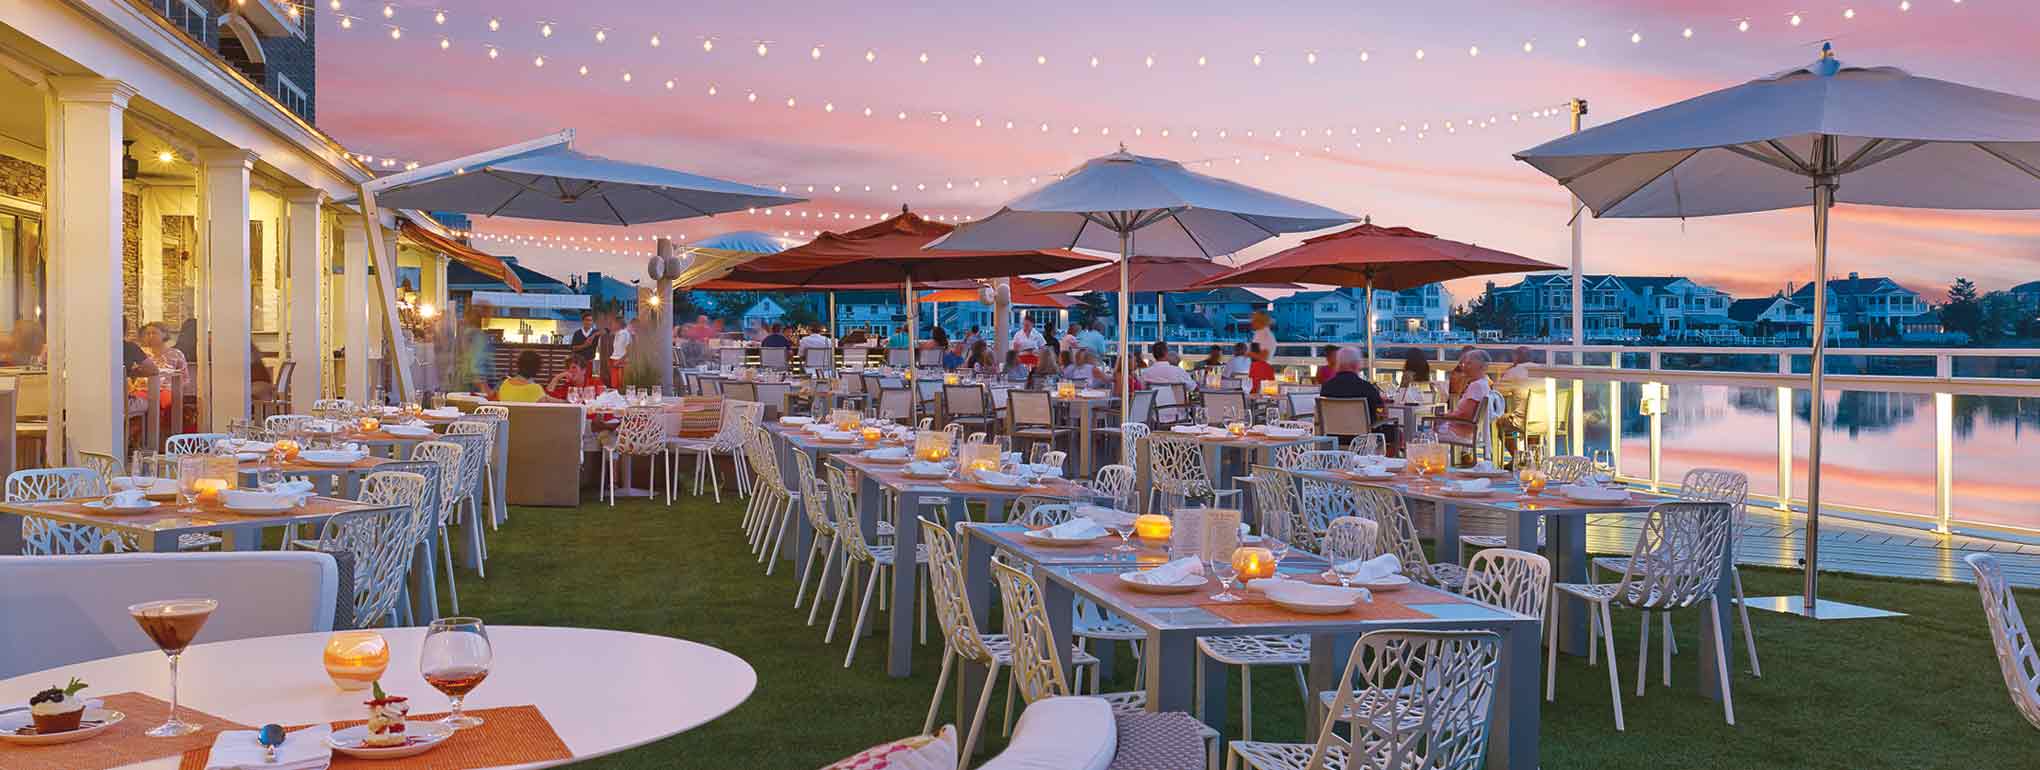 Los 25 mejores restaurantes de Nueva Jersey para cenar al aire libre's 25 best restaurants for outdoor dining